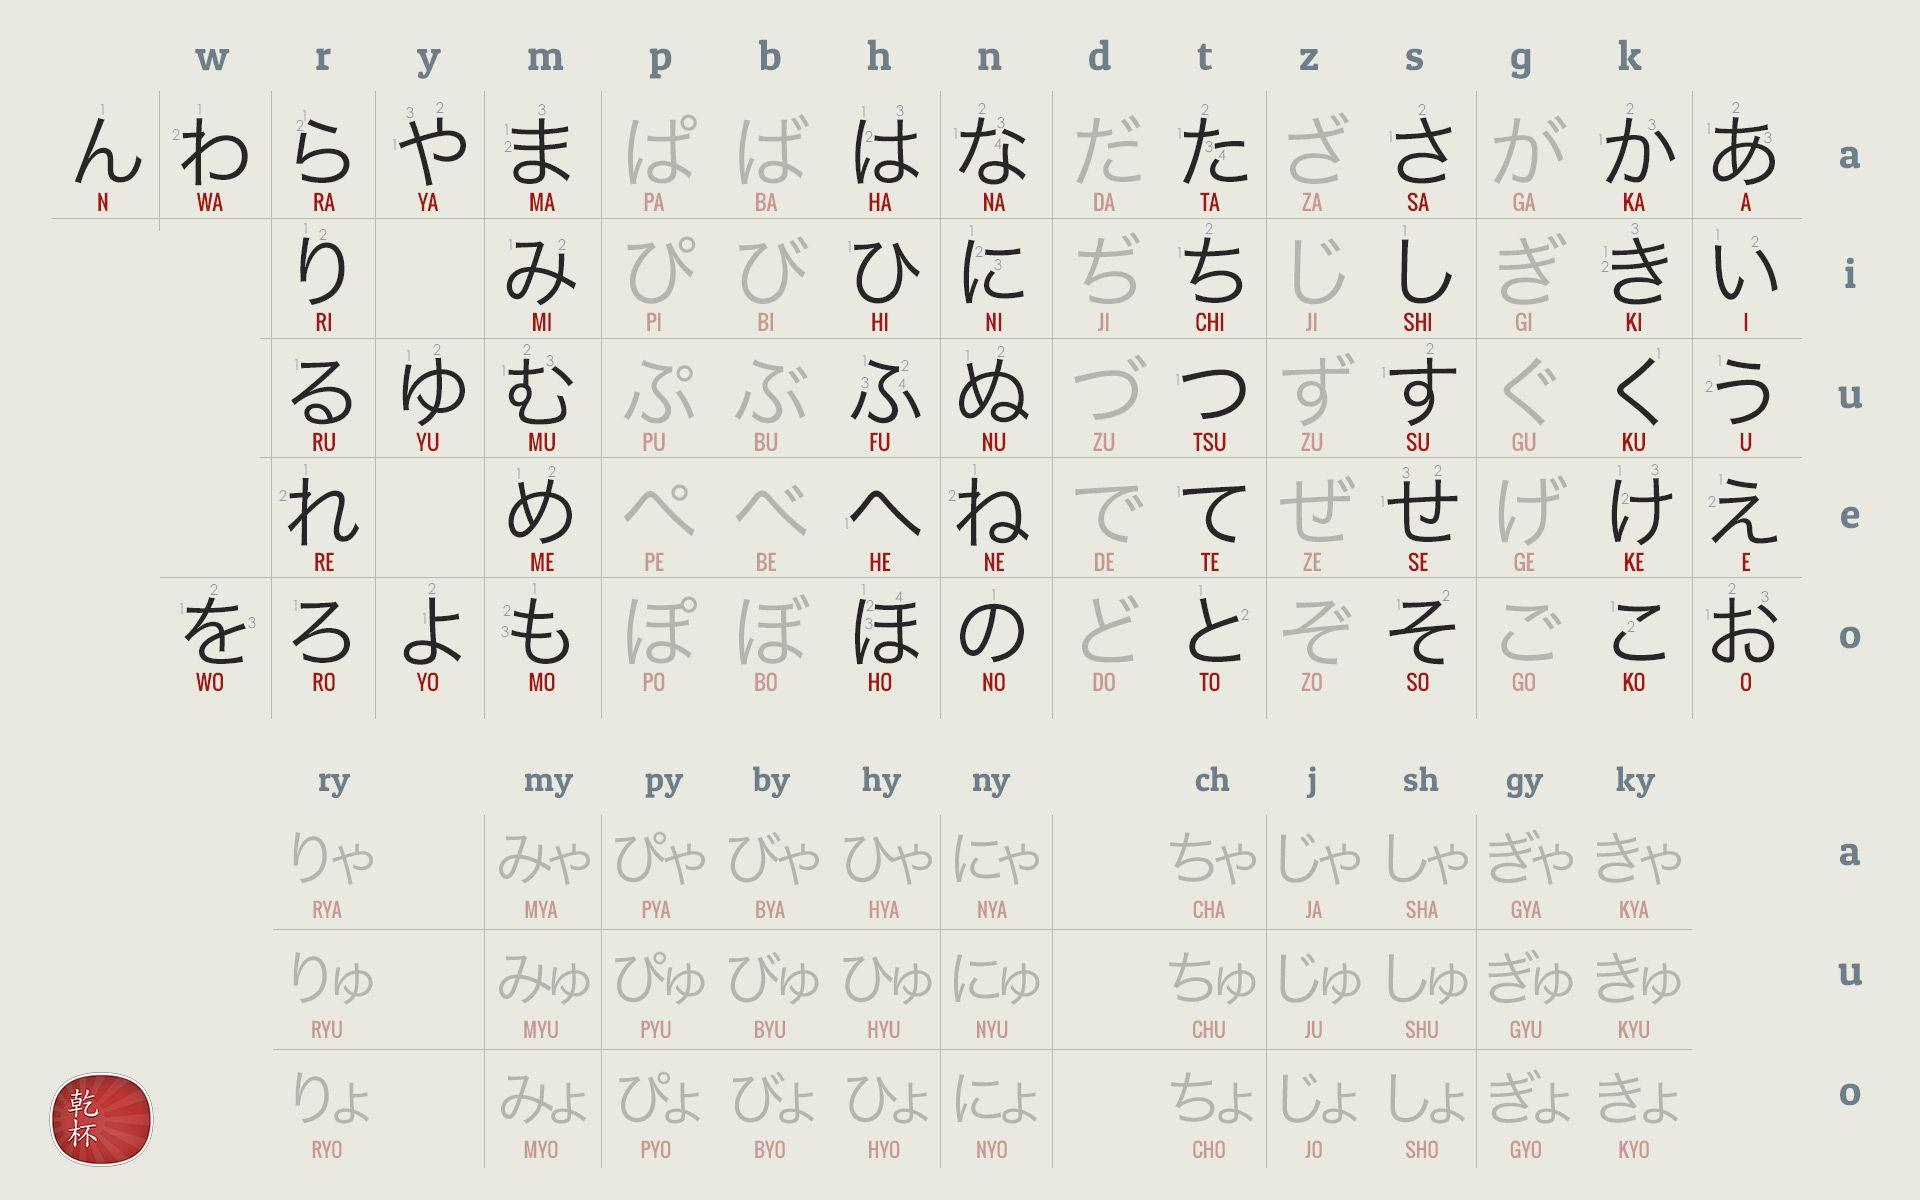 Japanese Hiragana Chart Wallpapers - Top Free Japanese ...